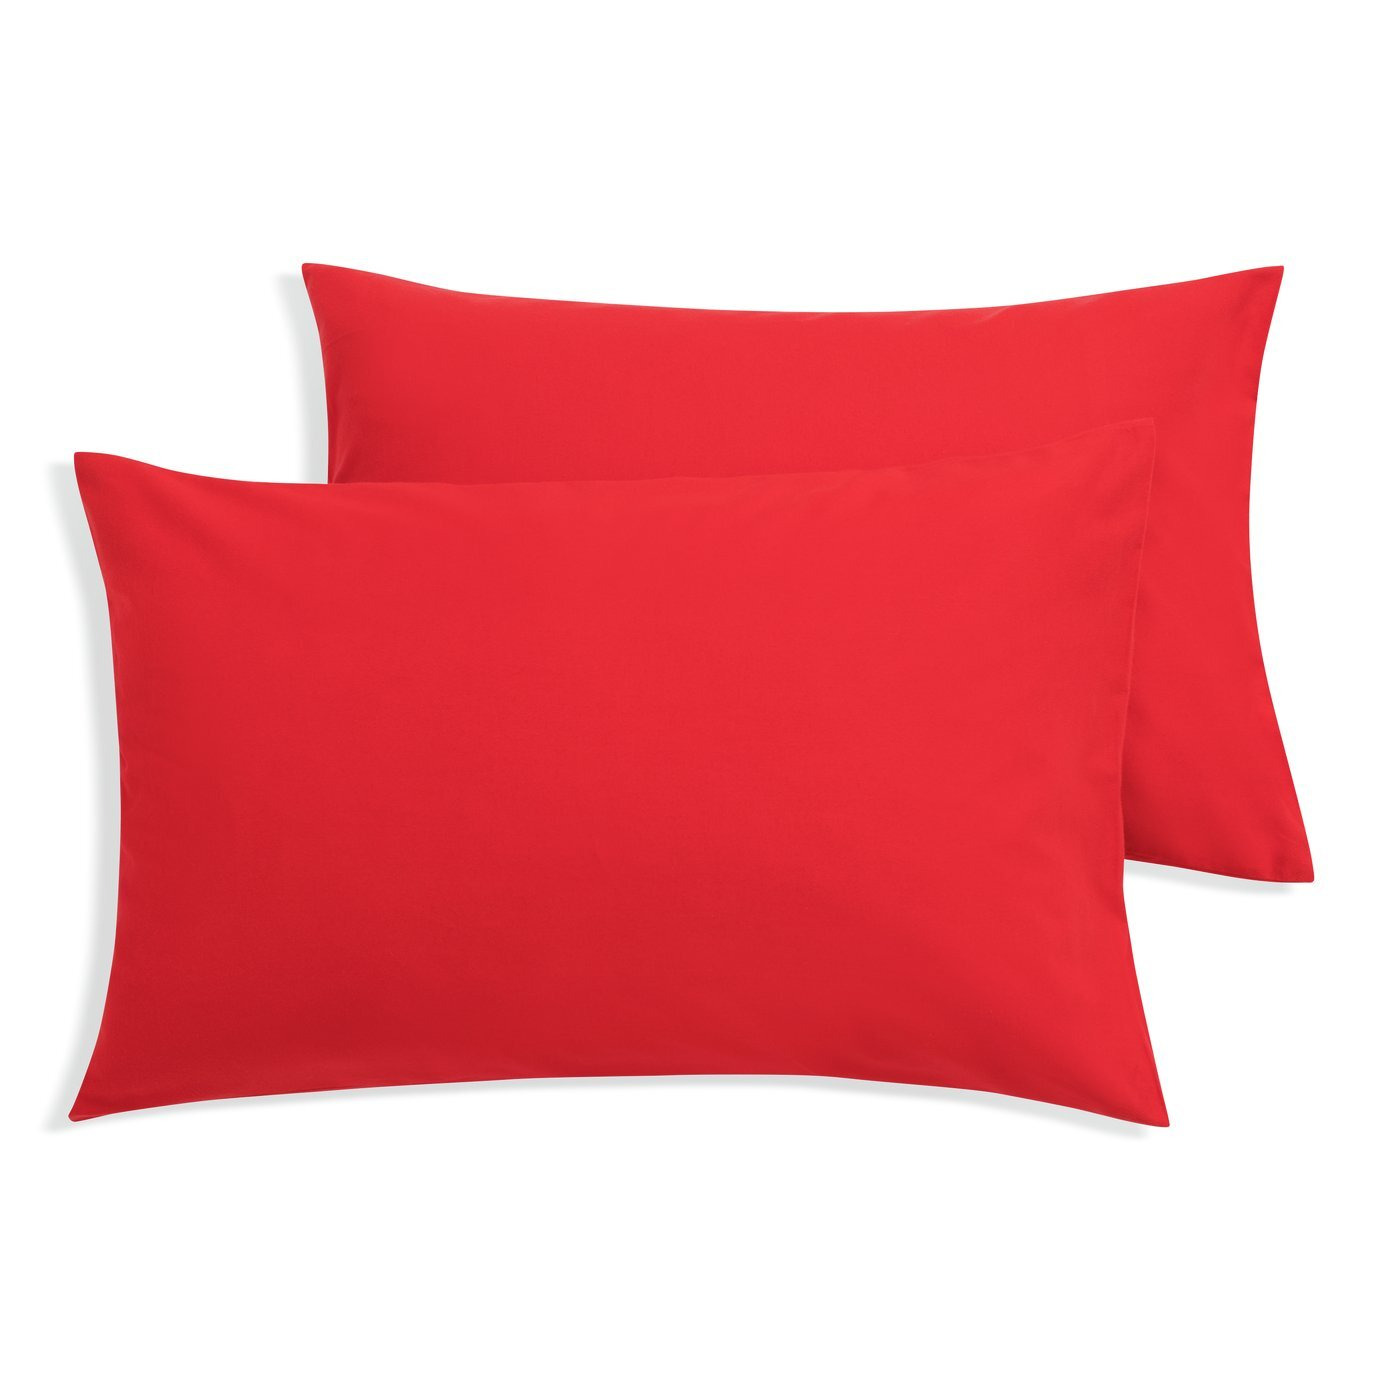 Habitat Brushed Cotton Standard Pillowcase Pair - Red - image 1